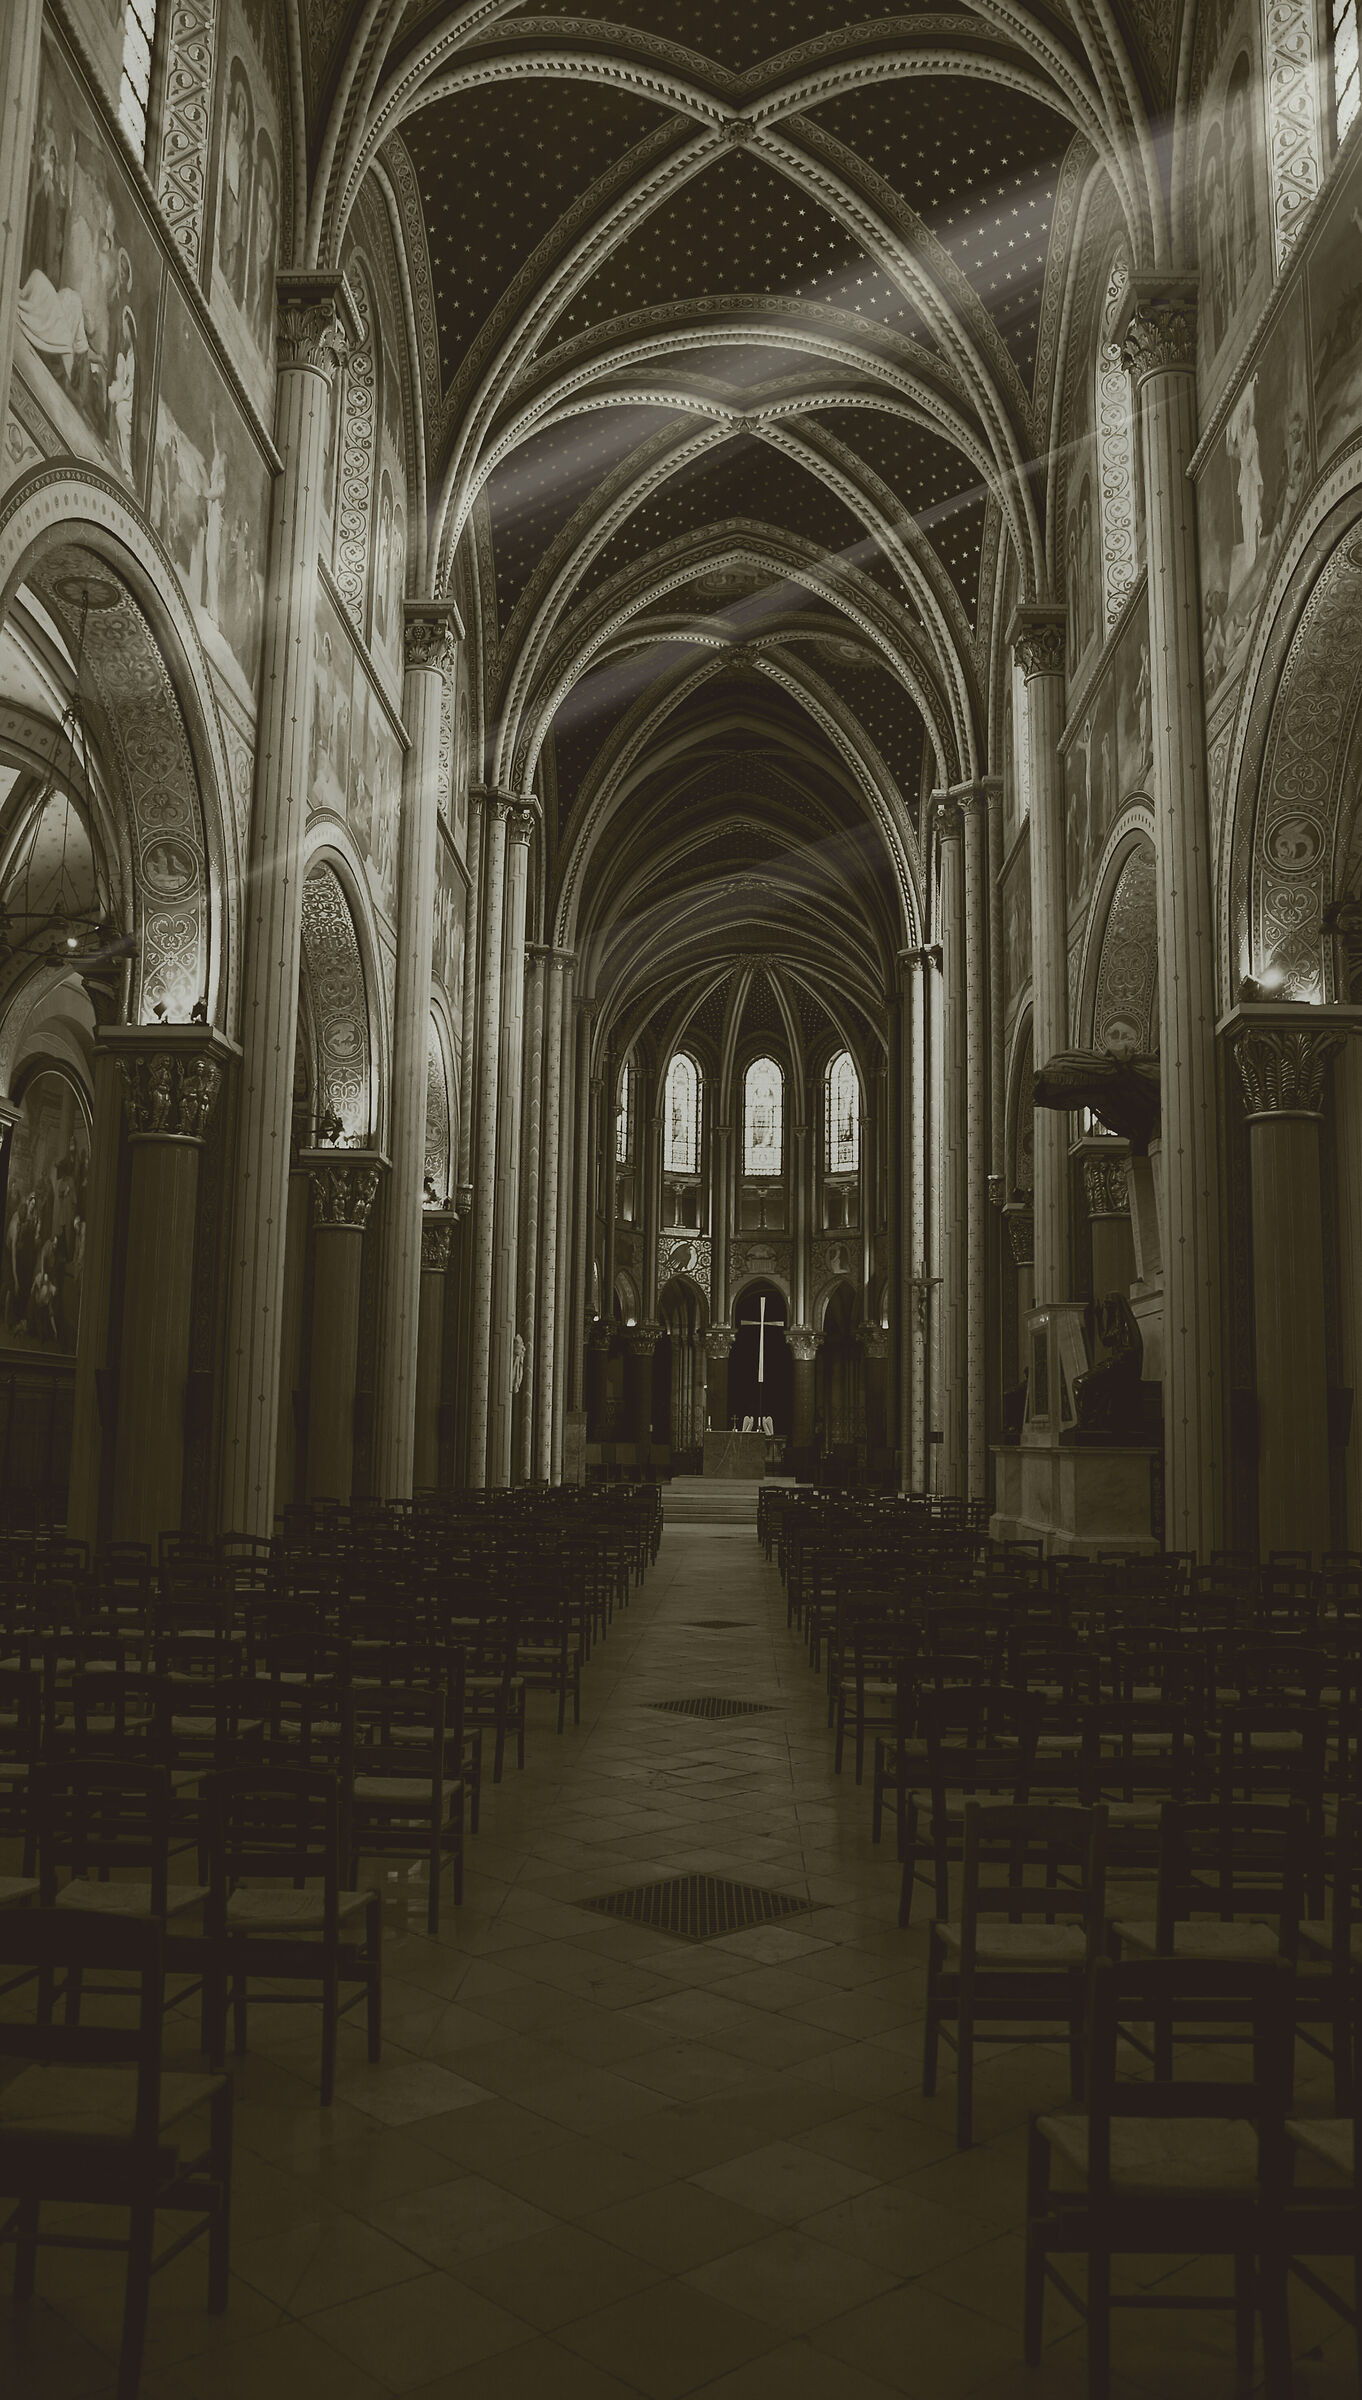 Church of Saint-Germain-des-Prés, Paris BN version...